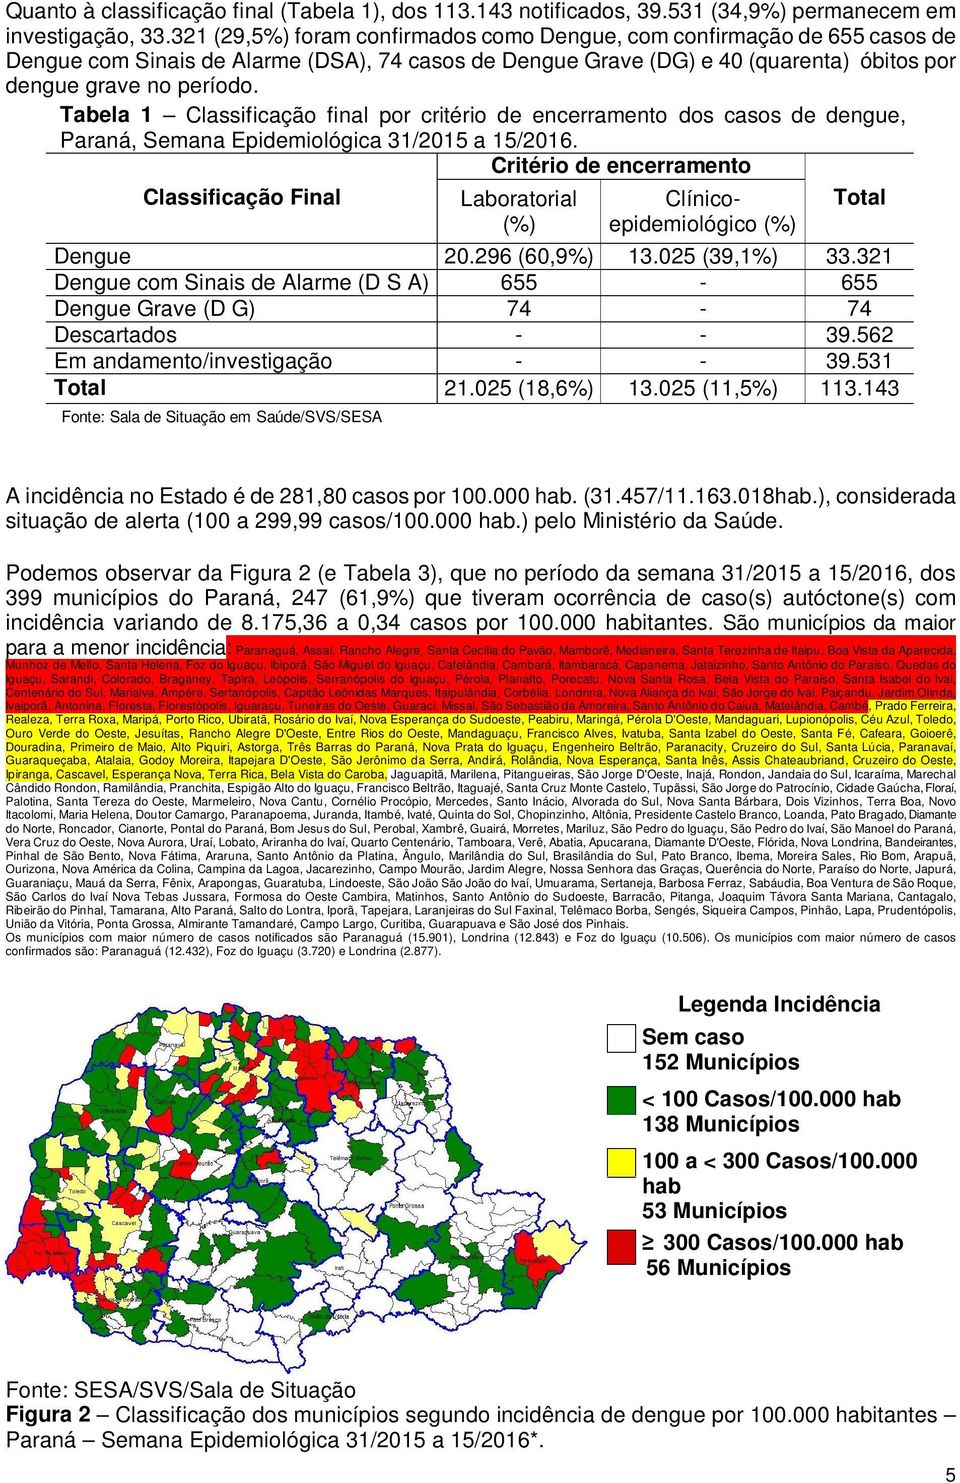 Tabela 1 Classificação final por critério de encerramento dos casos de dengue, Paraná, Semana Epidemiológica 31/2015 a 15/2016.